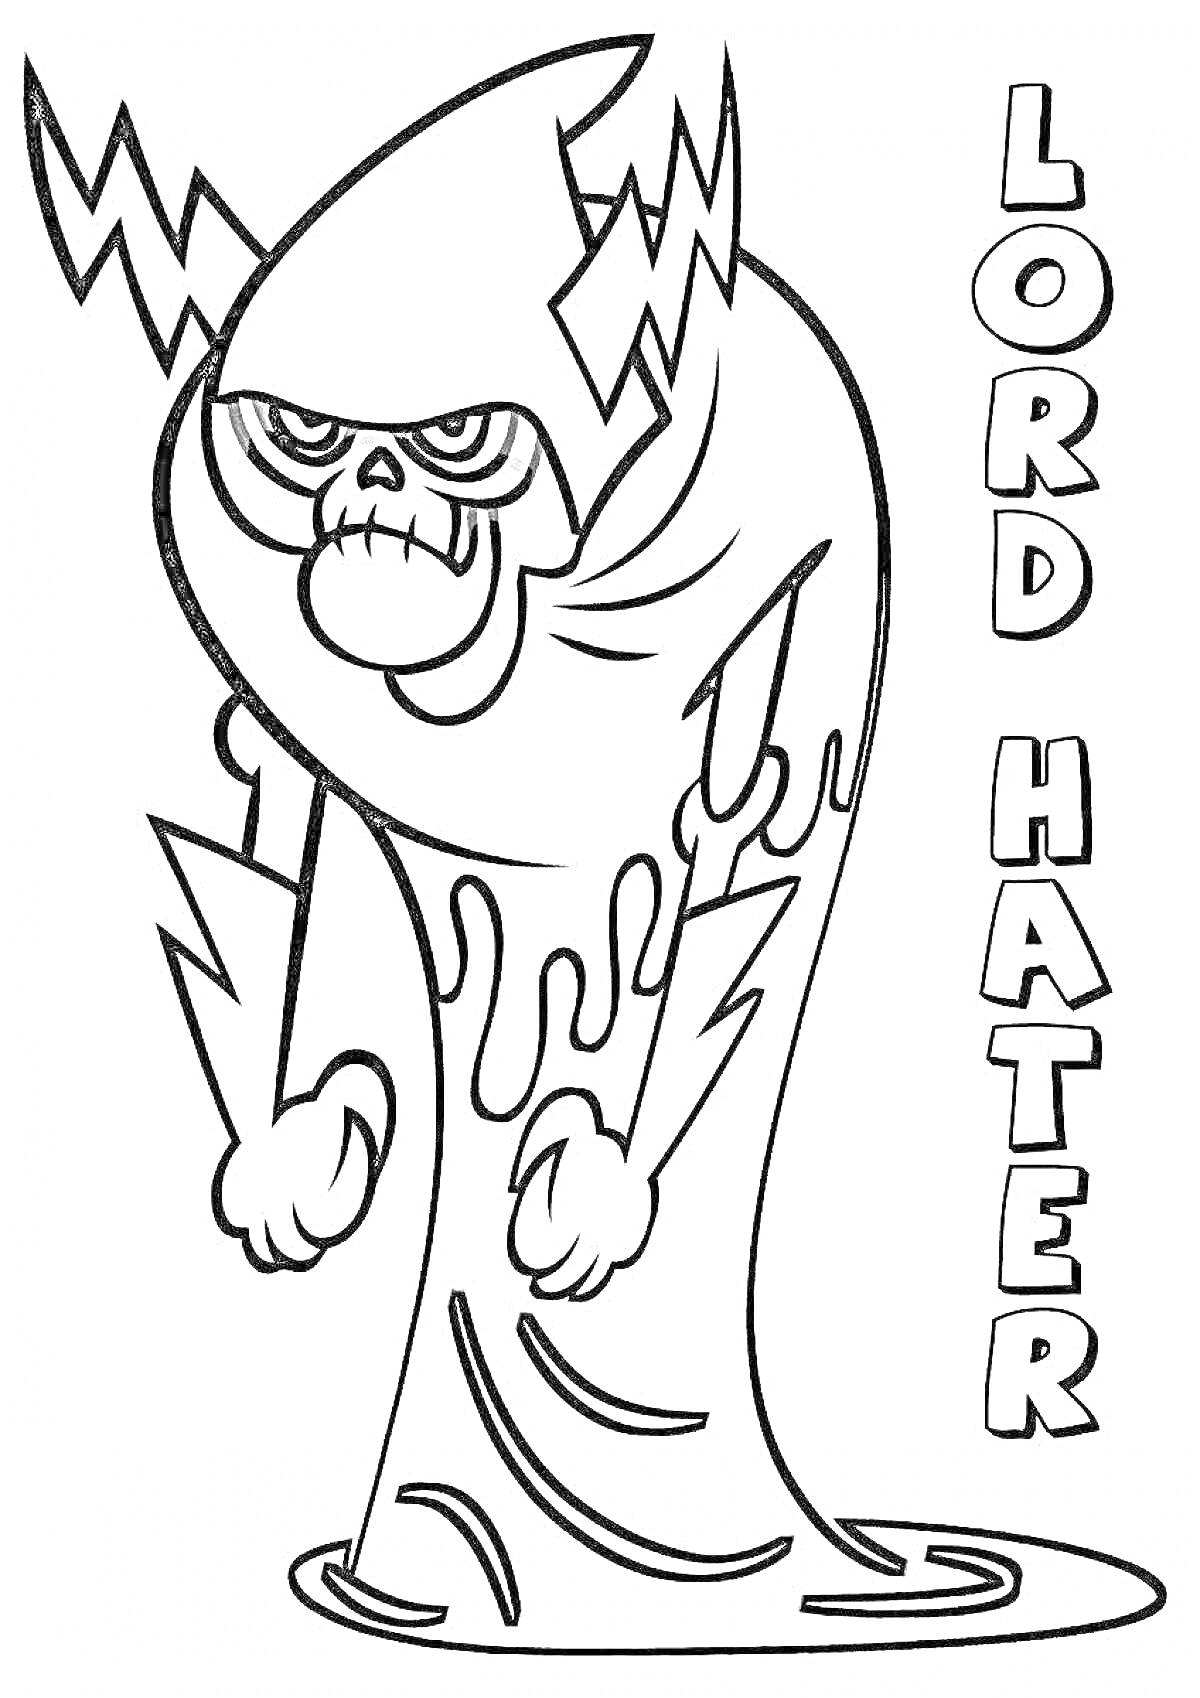 Раскраска Лорд Хейтер с молниями и надписью LORD HATER